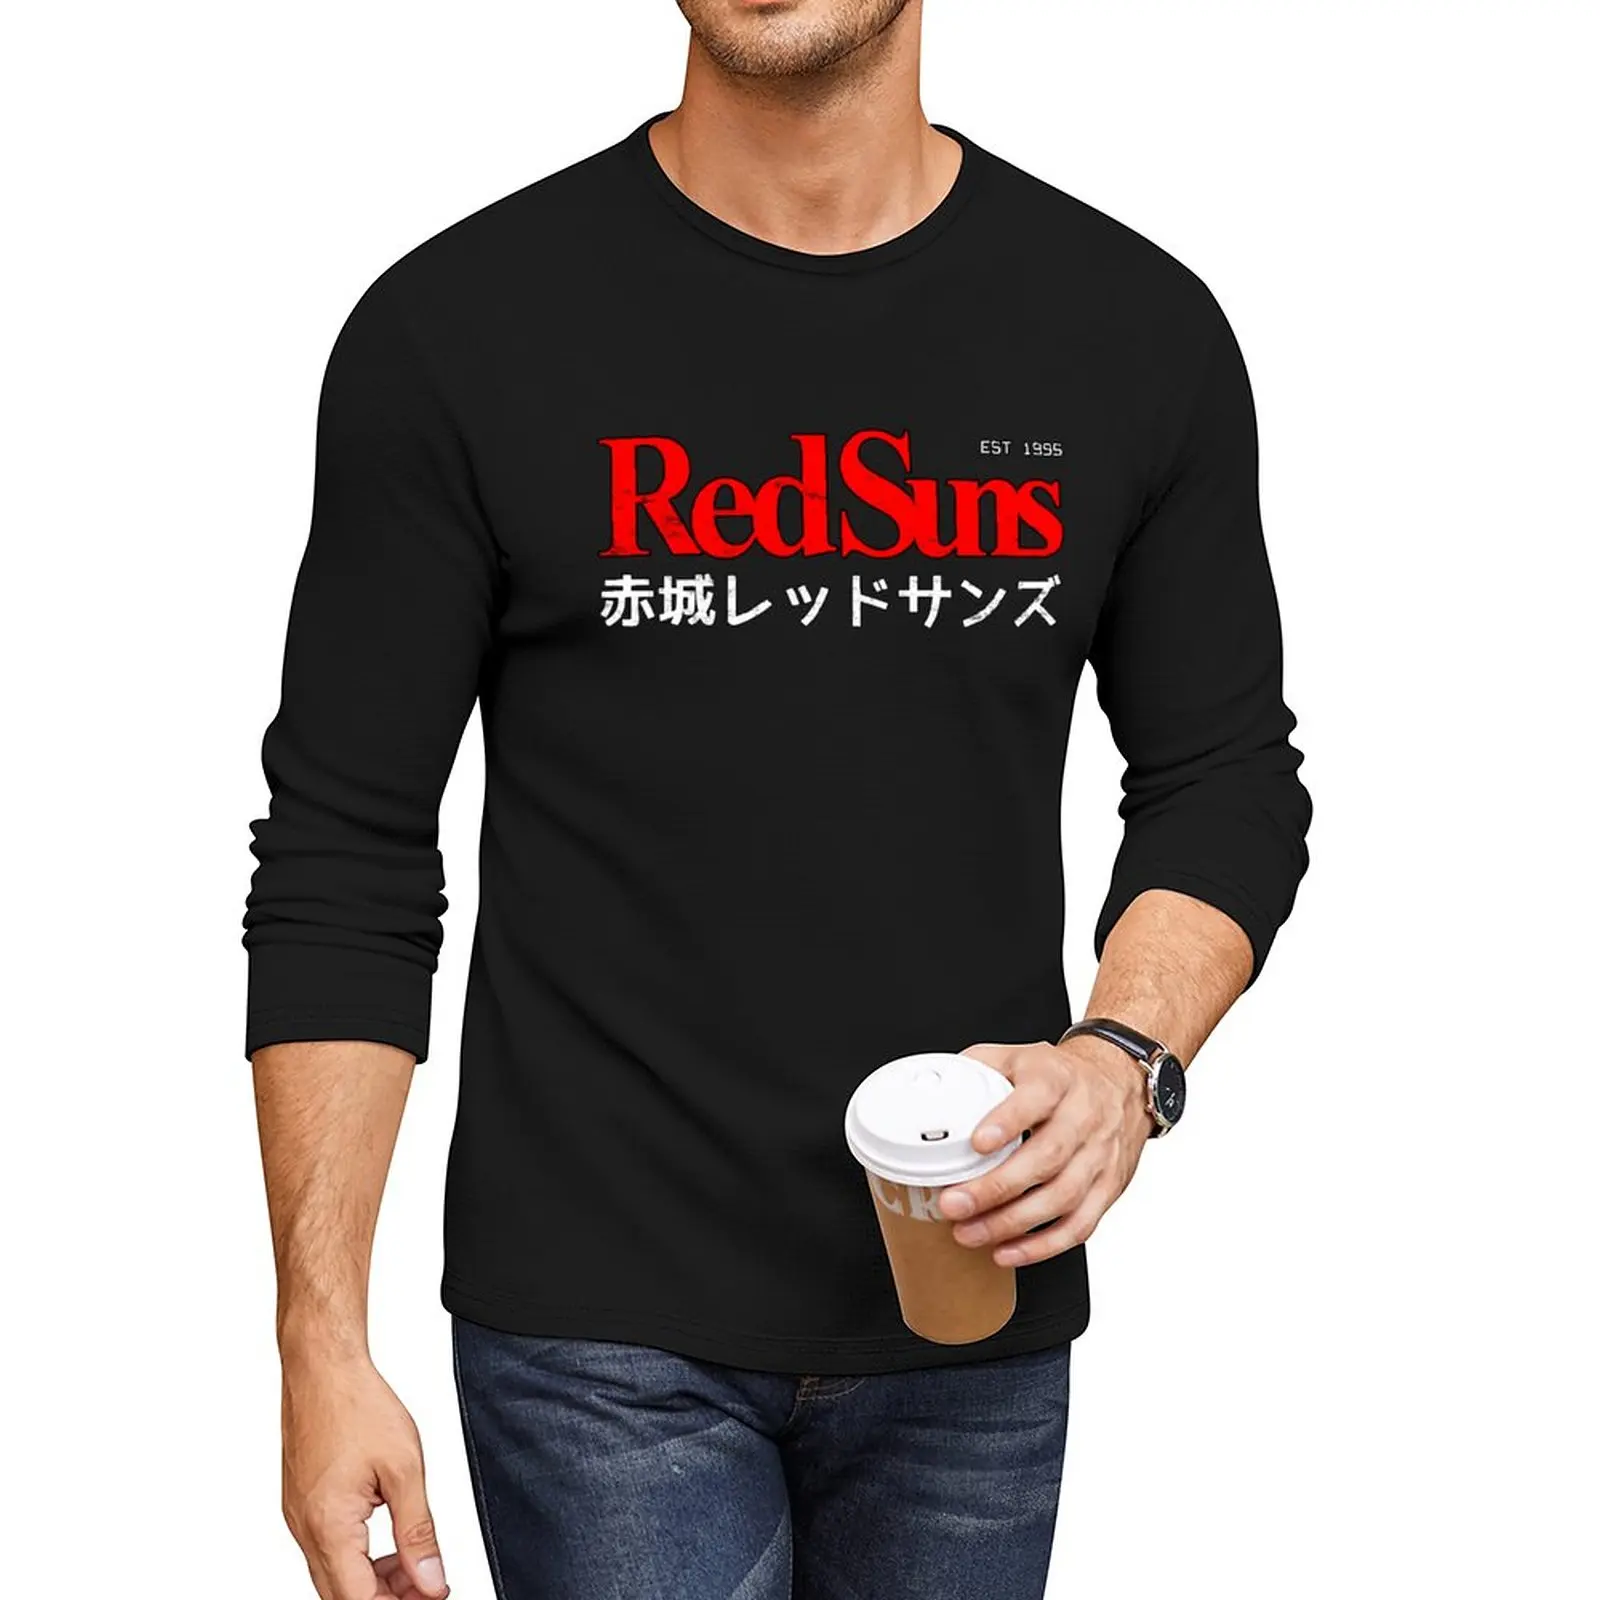 חדש הראשונית D - אקאגי RedSuns לוגו ארוך חולצה בגדים חמודים חולצות מותאמת אישית עיצוב משלך בנים חולצות בגדי גברים